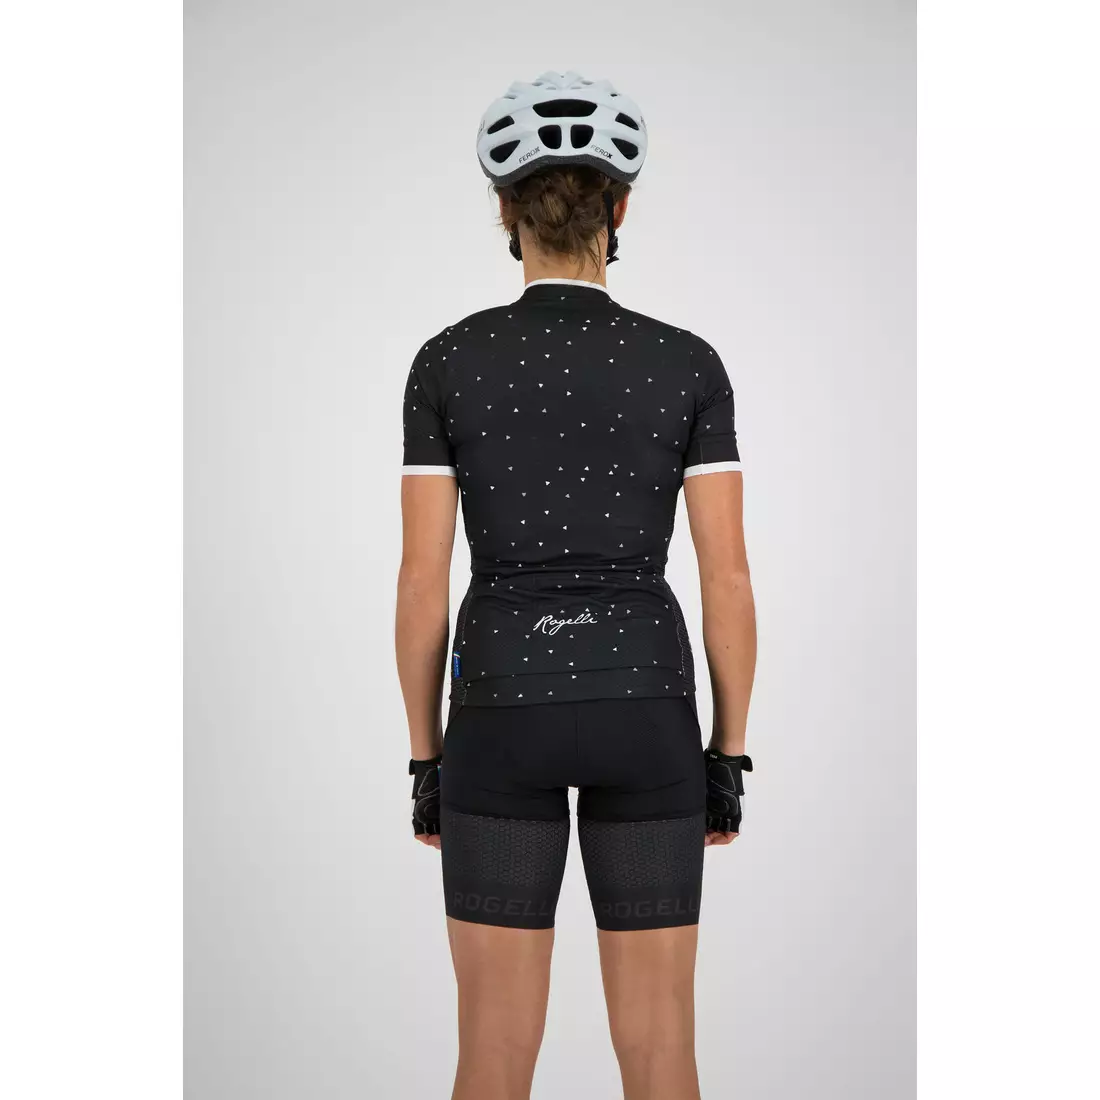 Rogelli DELTA 010.183 női kerékpáros mez fekete / fehér